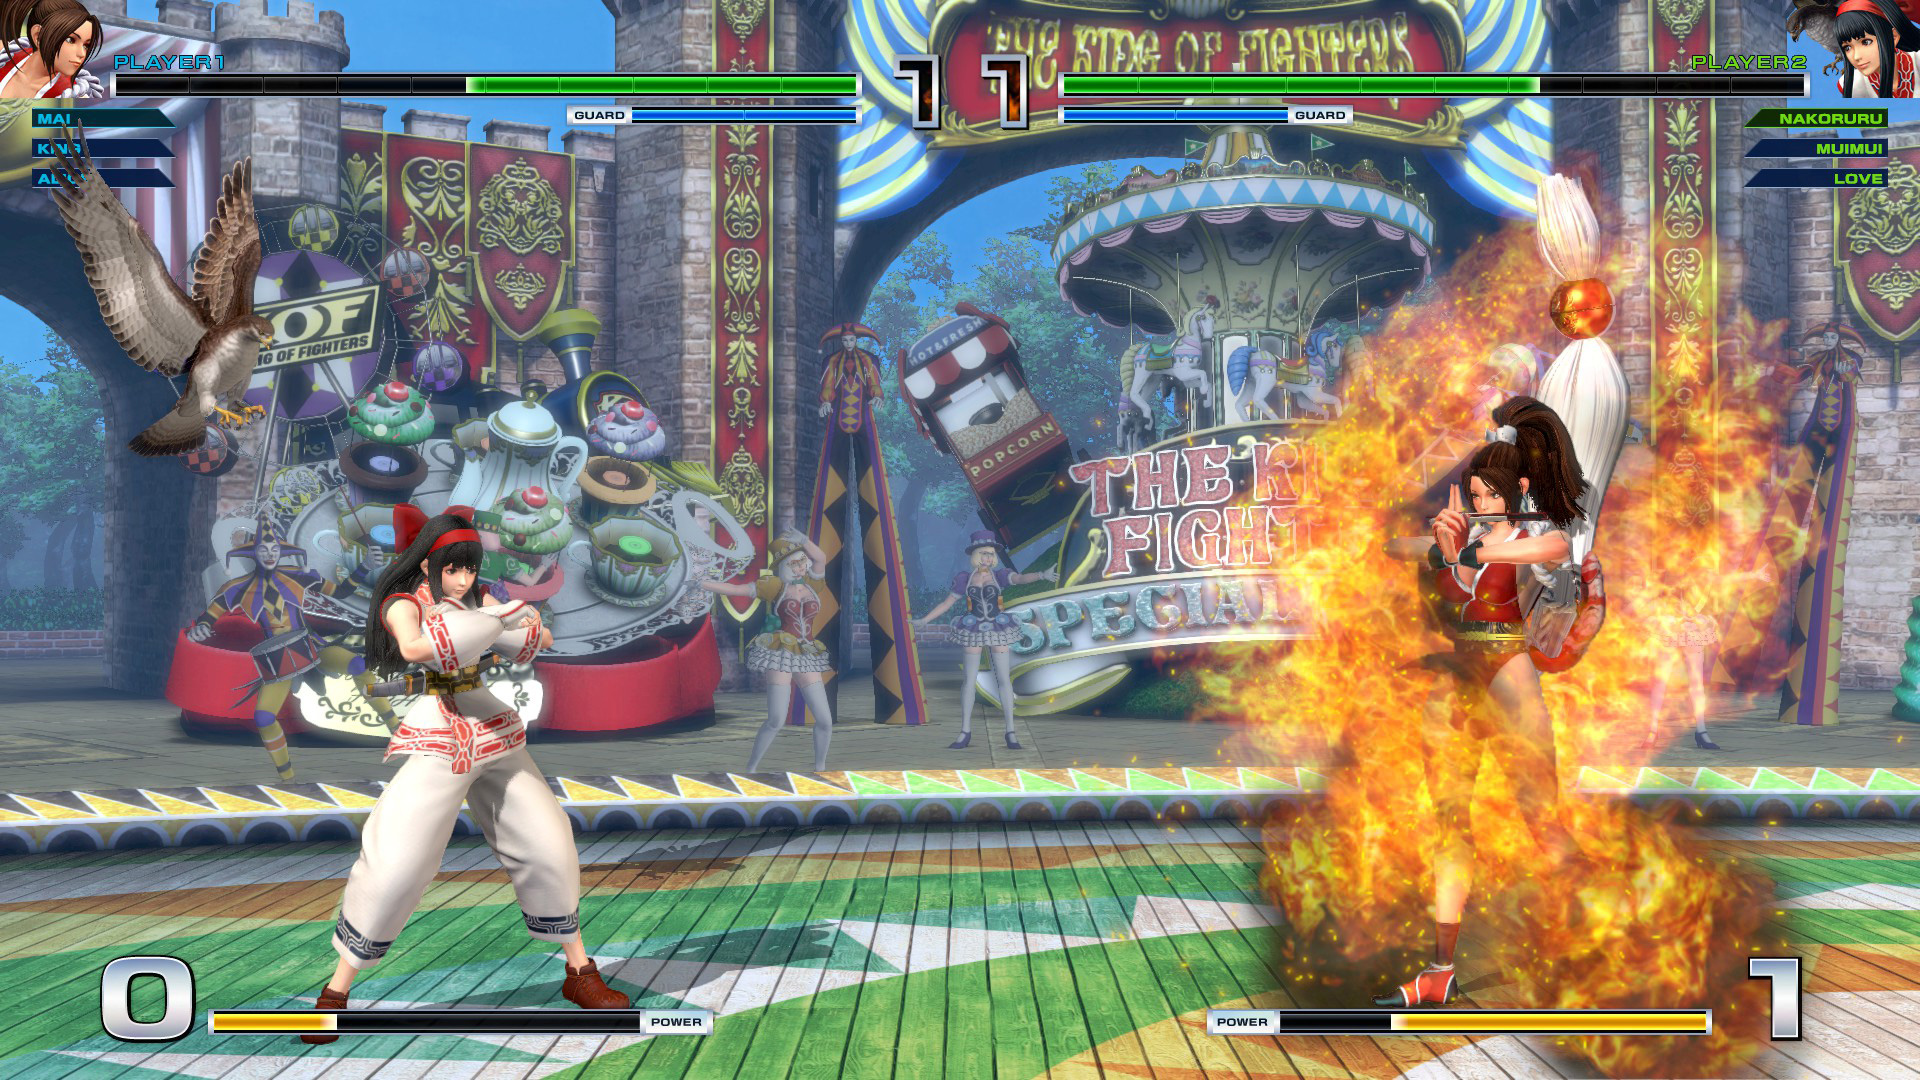 Jogo Street Fighter V PS4 no Paraguai - Atacado Games - Paraguay